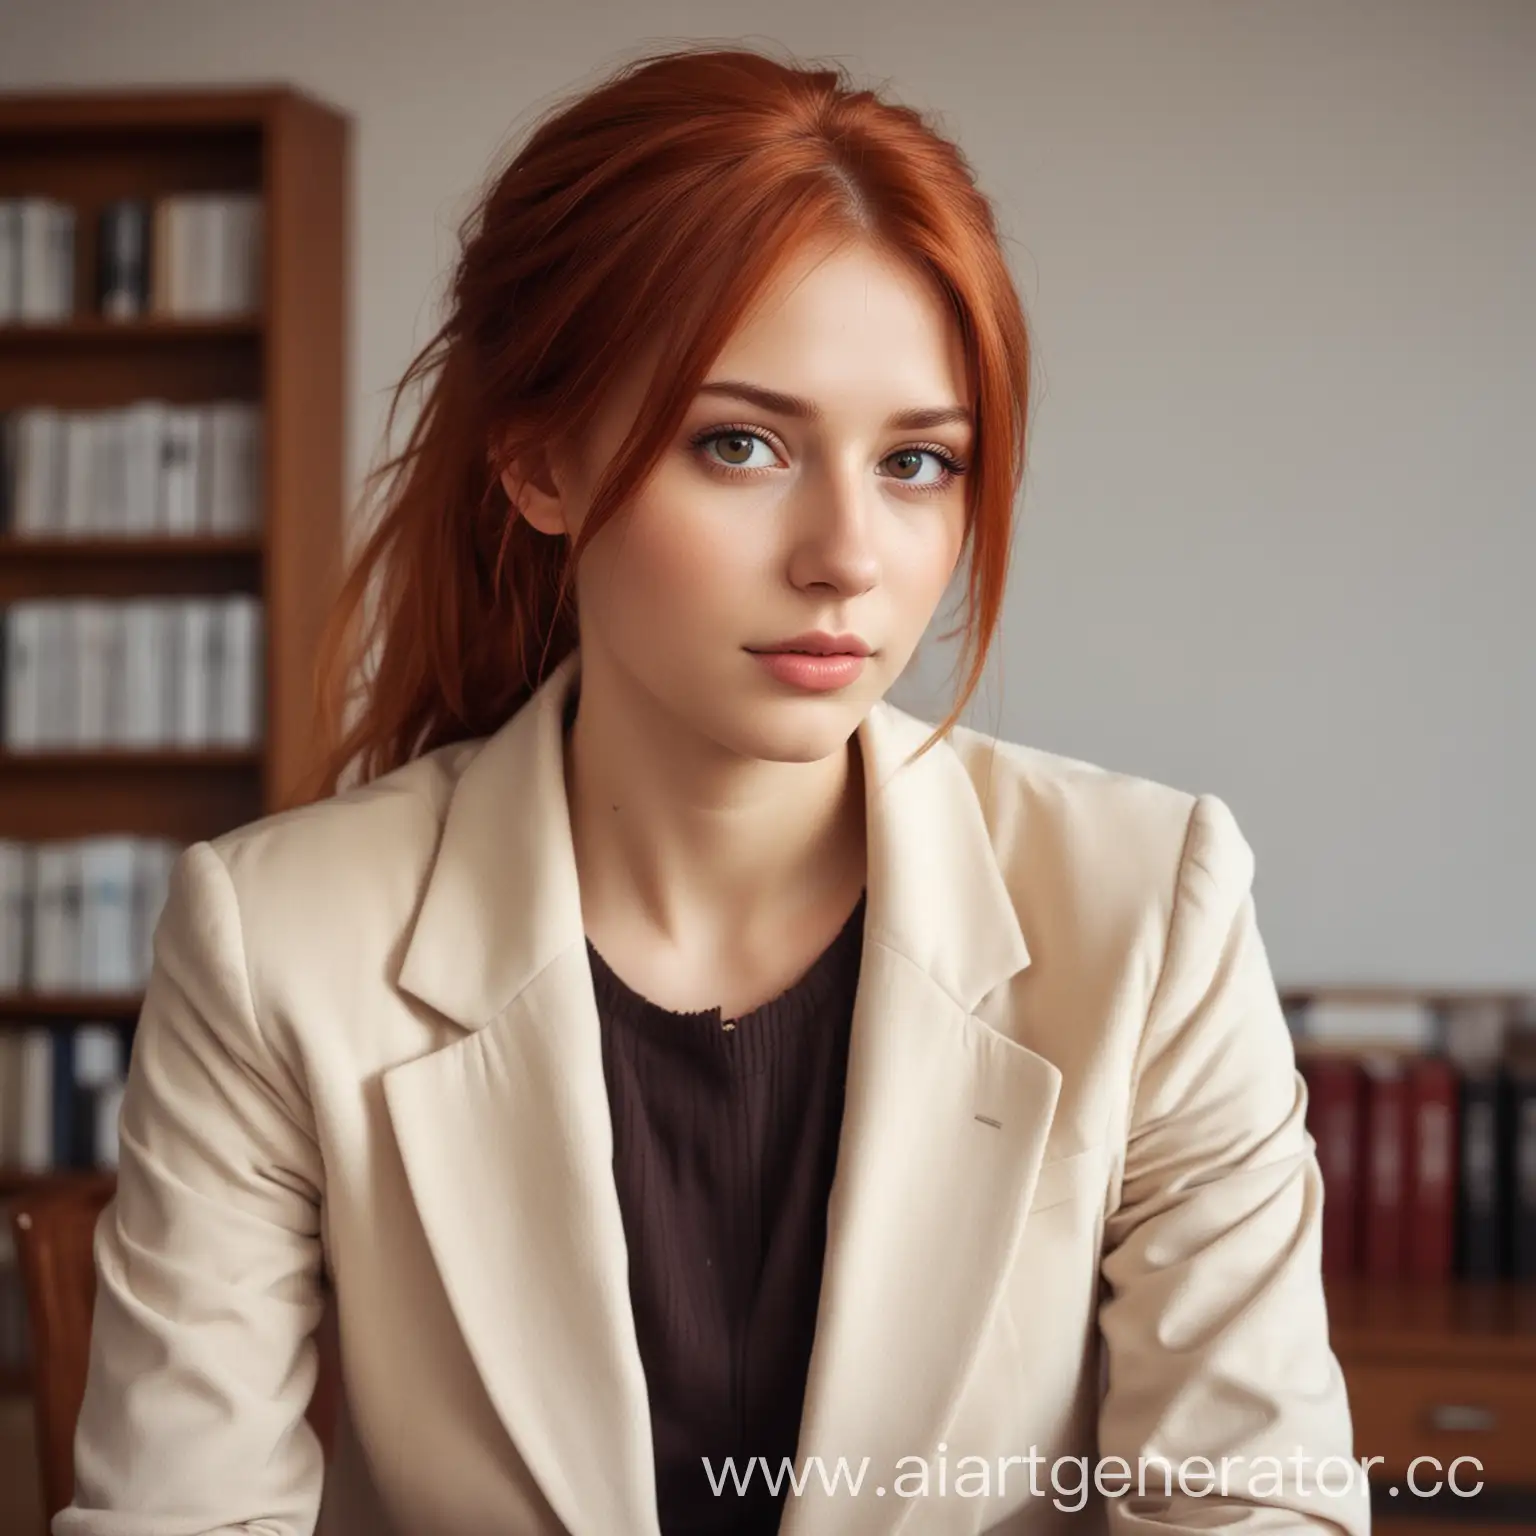 создай девушку славянской внешности по загруженному фото, с карими глазами, светло-рыжими волосами, длиной чуть ниже груди, в классическом пиджаке, молочного цвета, на фоне уютного офиса. 